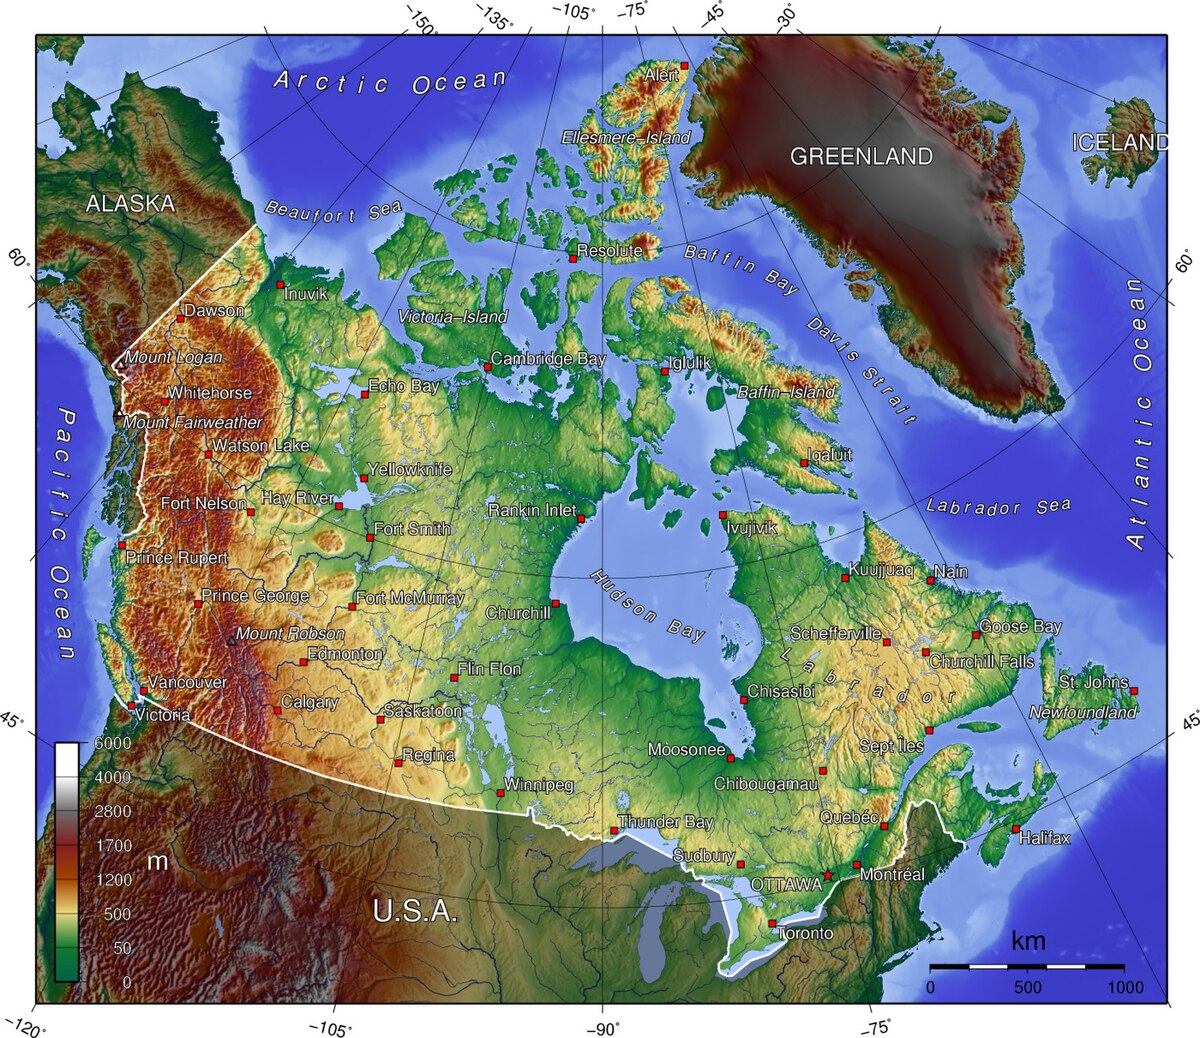 캐나다 전국의 해발 고도를 표시한 지형도(지세도)입니다.